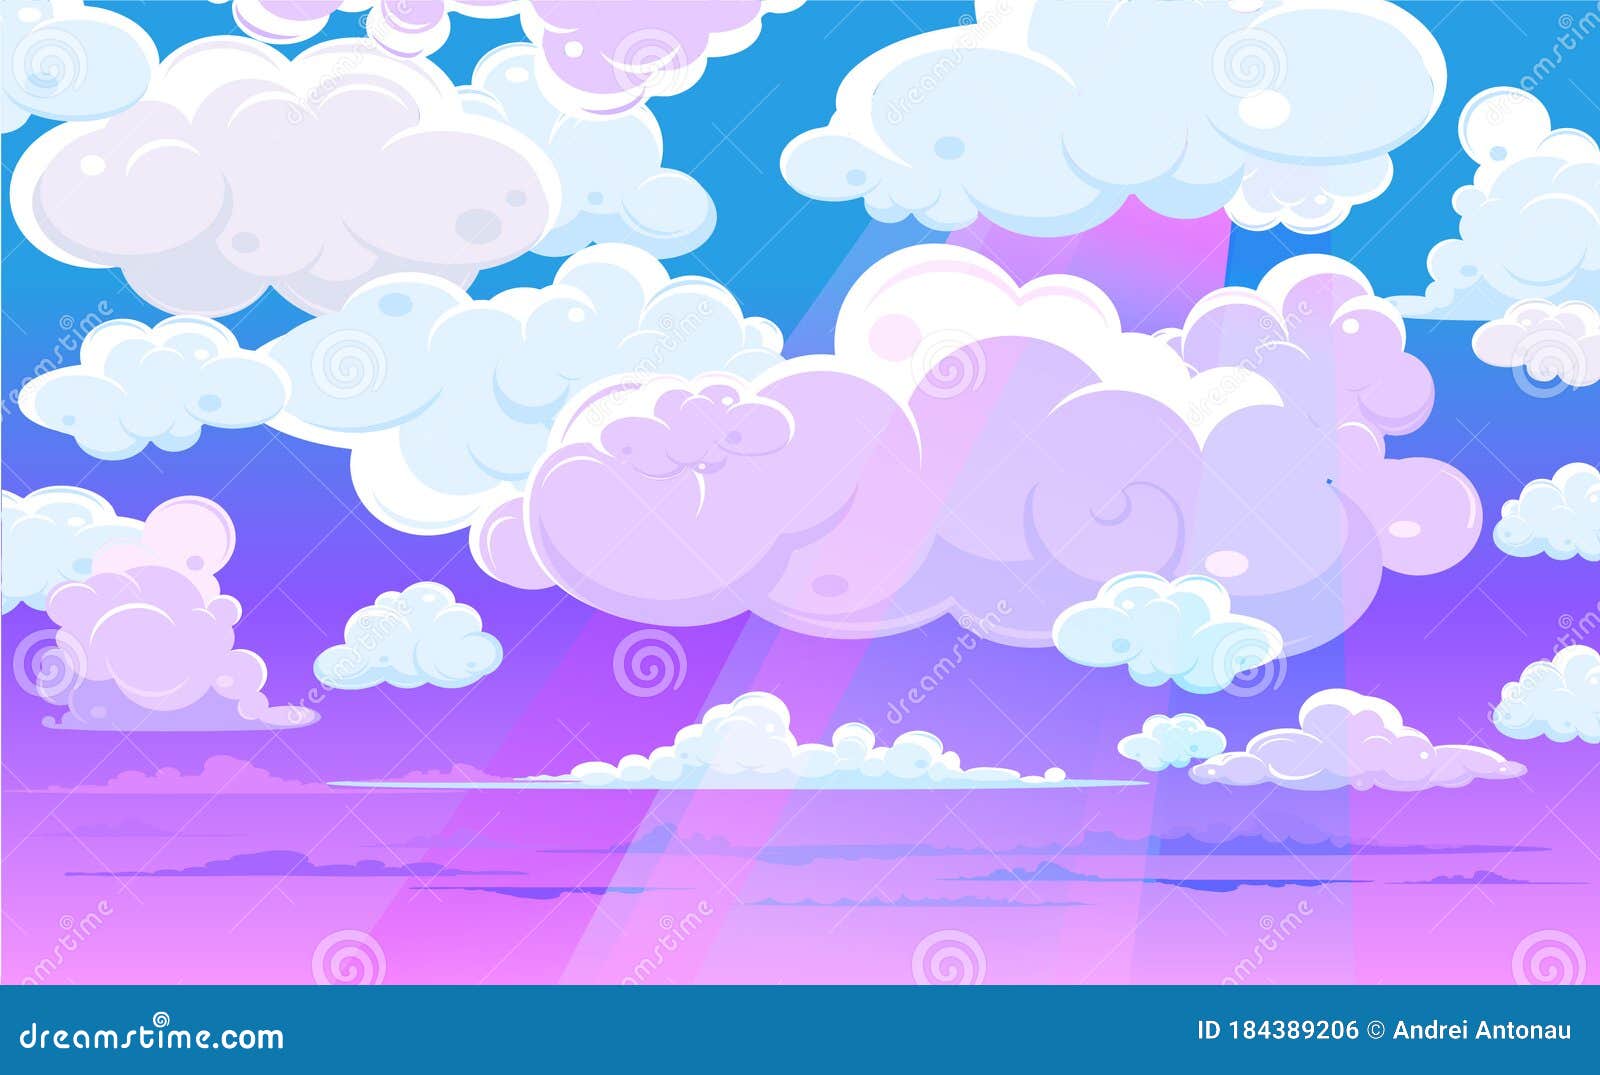 Hãy chiêm ngưỡng vẻ đẹp của Bầu trời hồng vector với Vector Pink Sky Clouds - một phong cách vectơ đặc biệt với gam màu được chỉ định. Hình ảnh sáng tạo và màu sắc tươi sáng đem lại cảm giác vui tươi, thư giãn. Nếu bạn muốn tìm kiếm những hình ảnh độc đáo để tăng sự sáng tạo của mình, hãy xem nó!